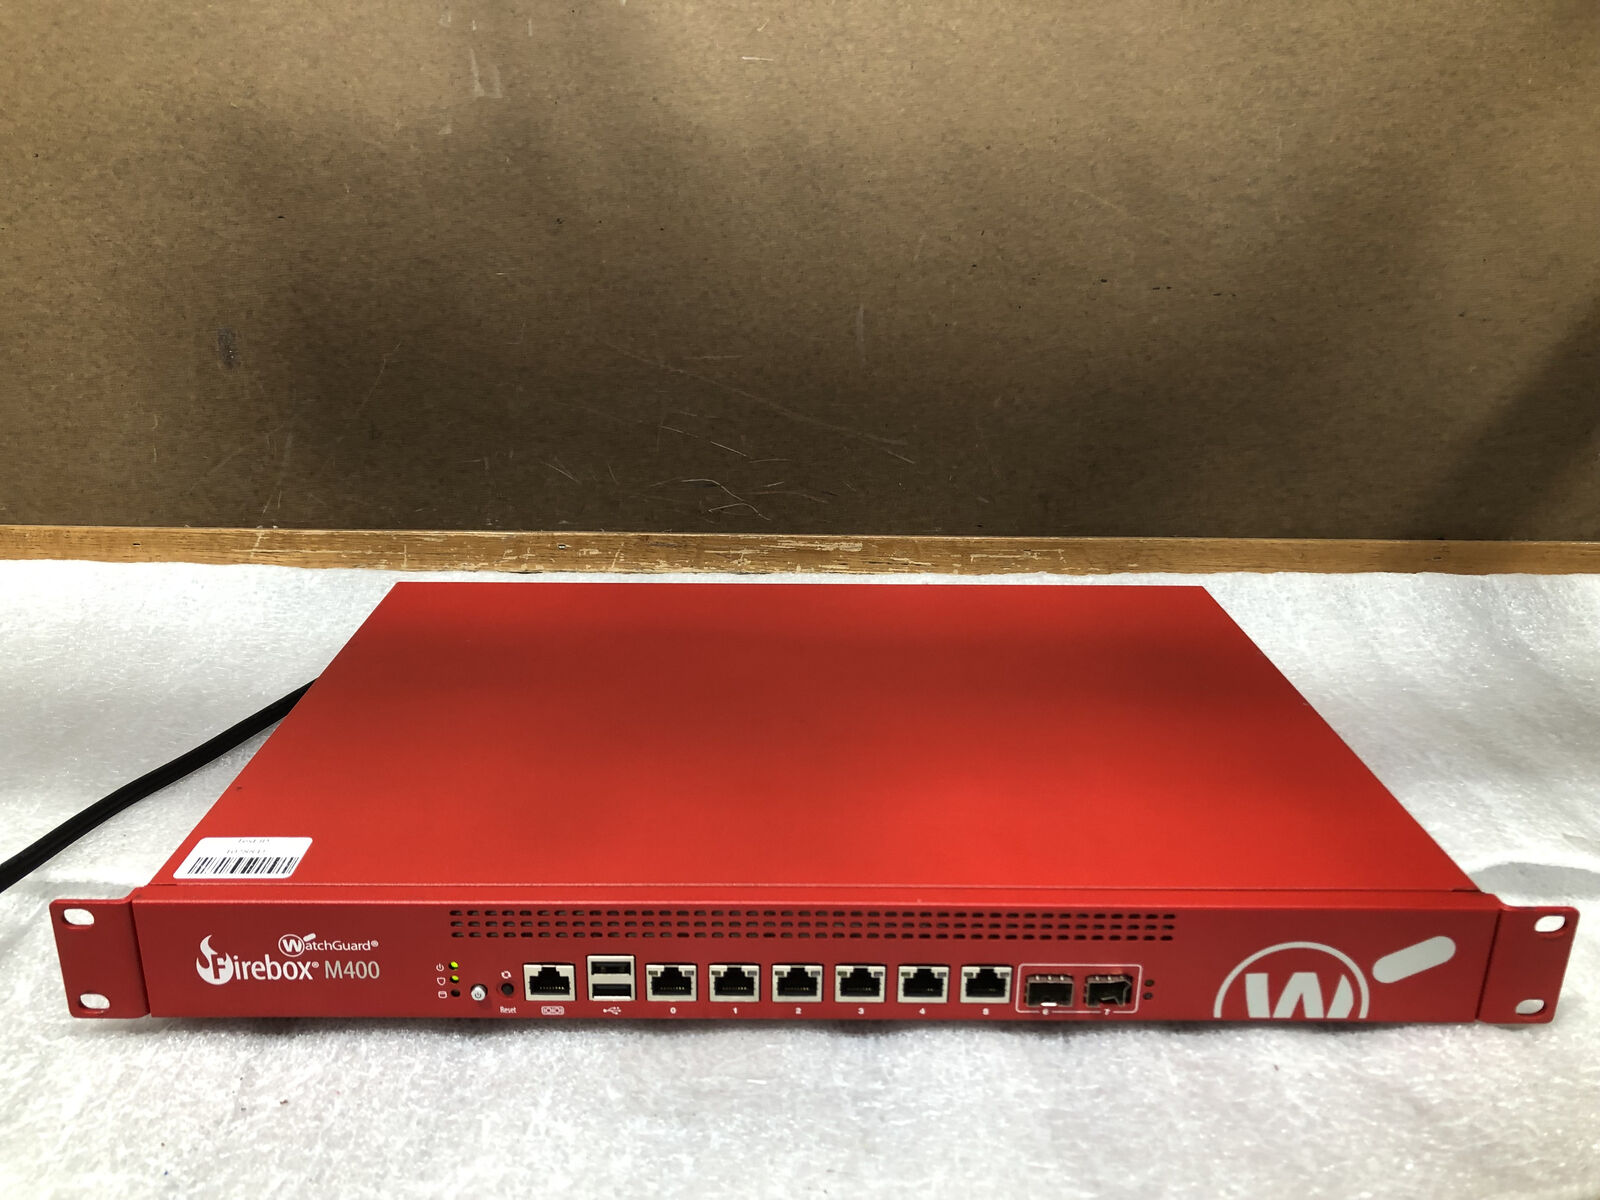 WatchGuard Firebox M400 KL5AE8 8Gbps Gigabit Managed Firewall --TESTED/RESET